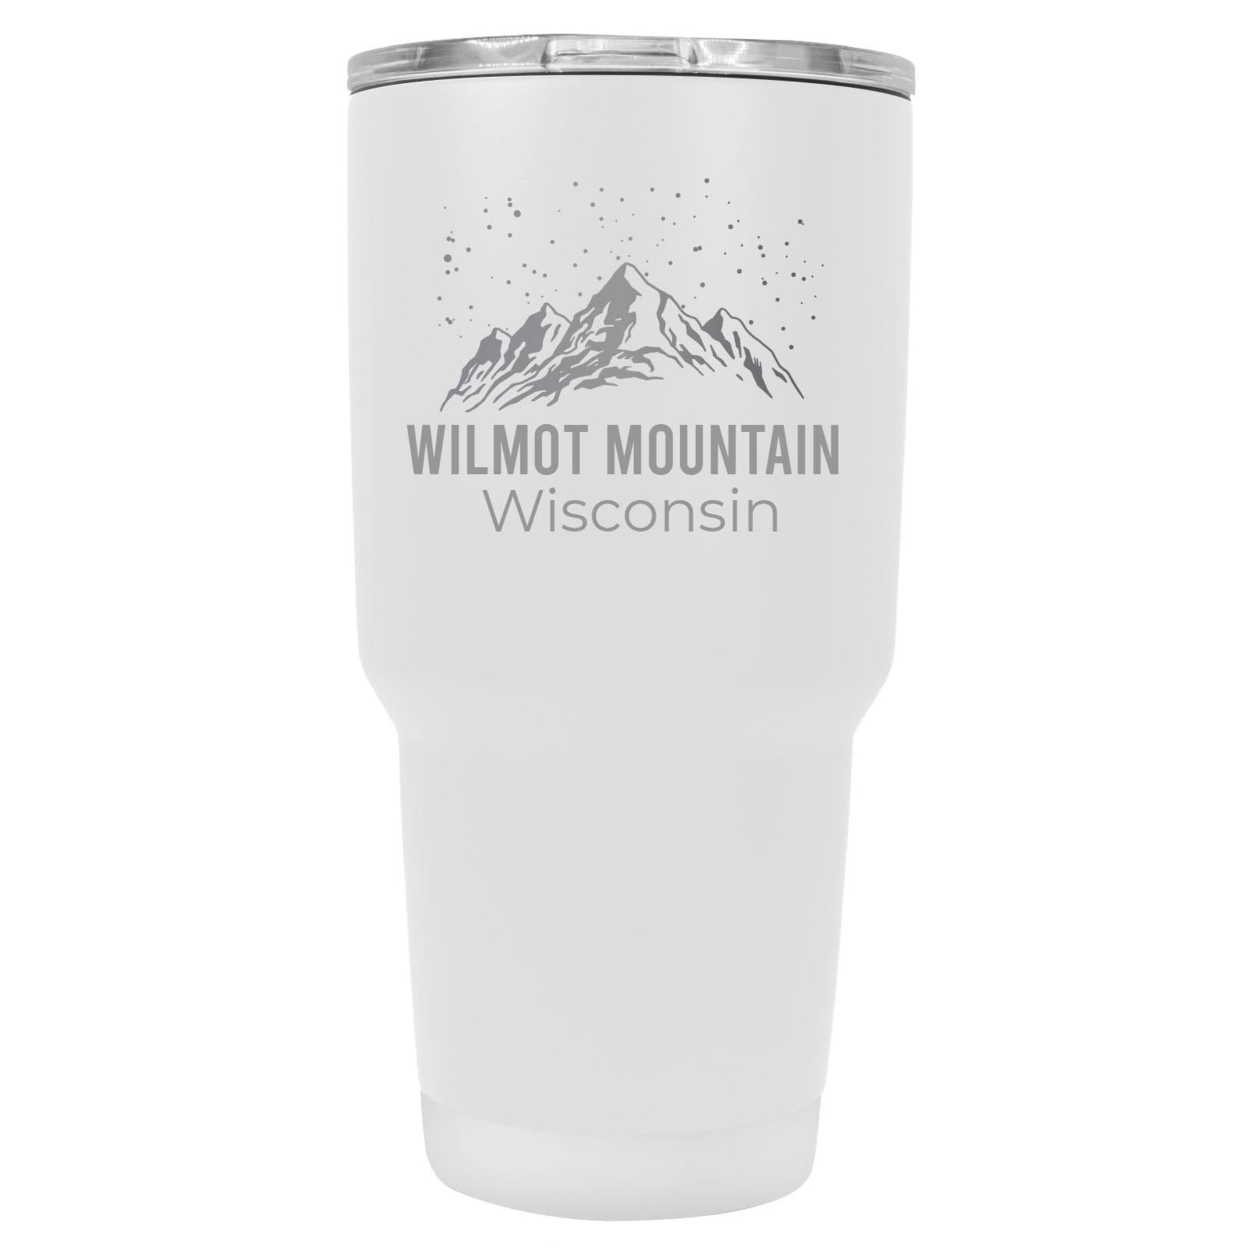 Wilmot Mountain Wisconsin Ski Snowboard Winter Souvenir Laser Engraved 24 Oz Insulated Stainless Steel Tumbler - White